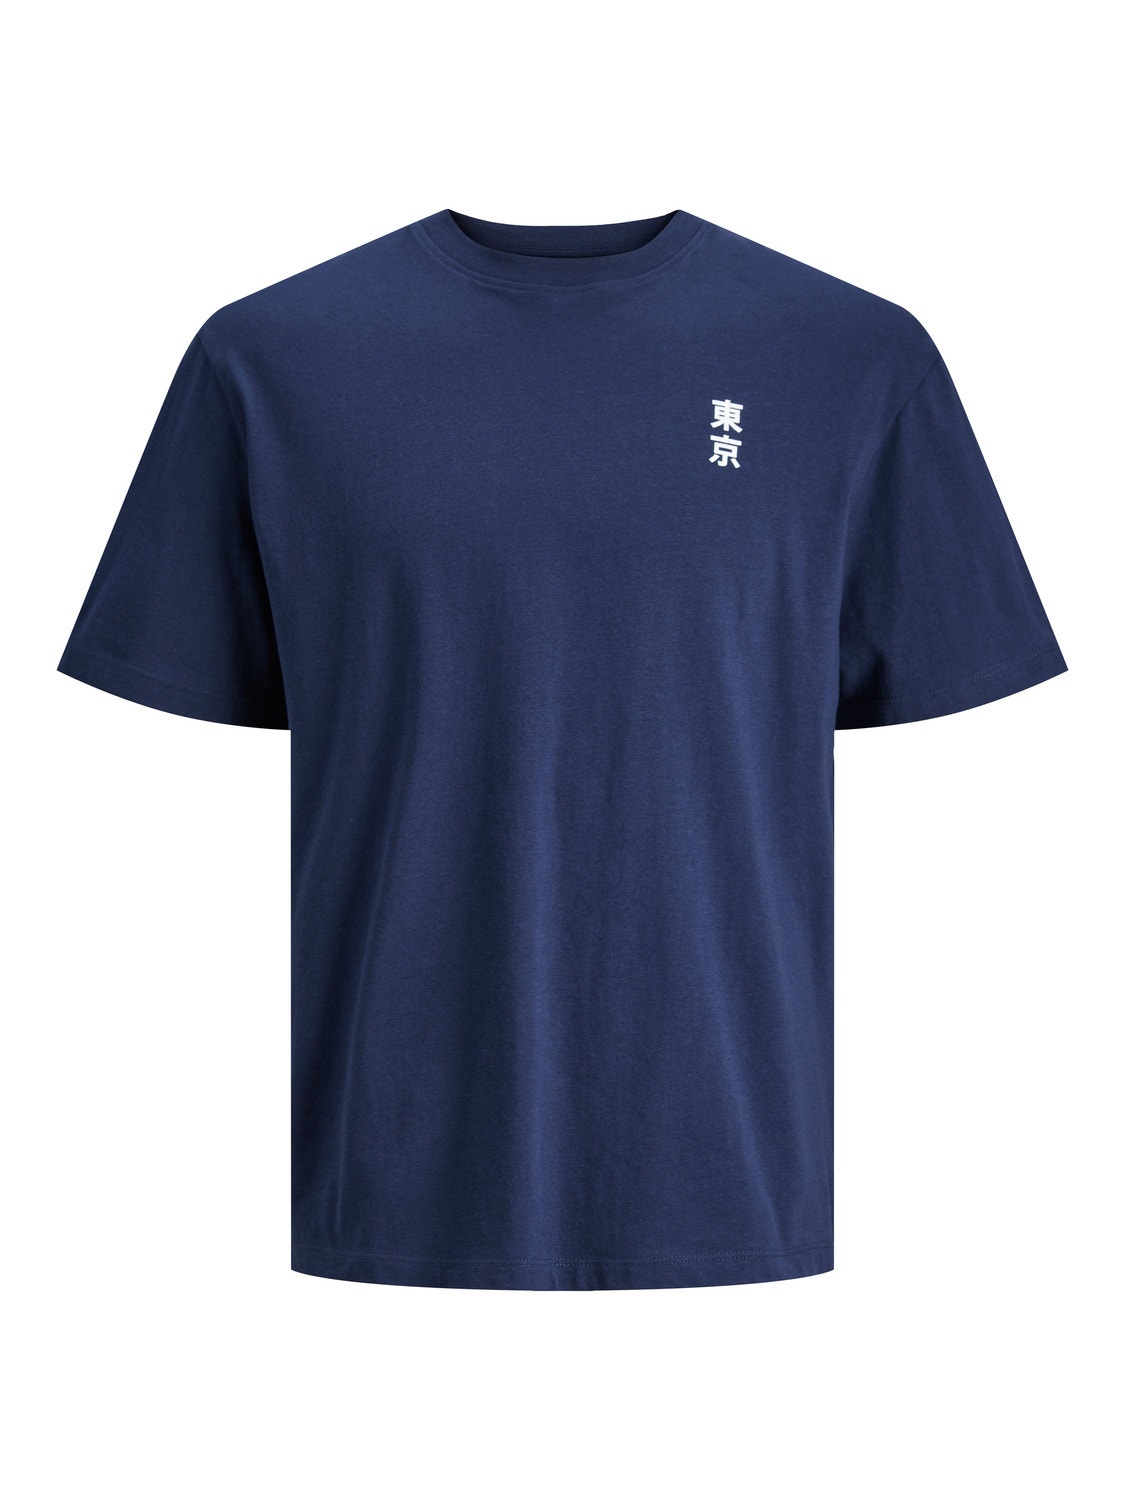 Jack & Jones Gedruckt T-shirt Für jungs -Navy Blazer - 12247655